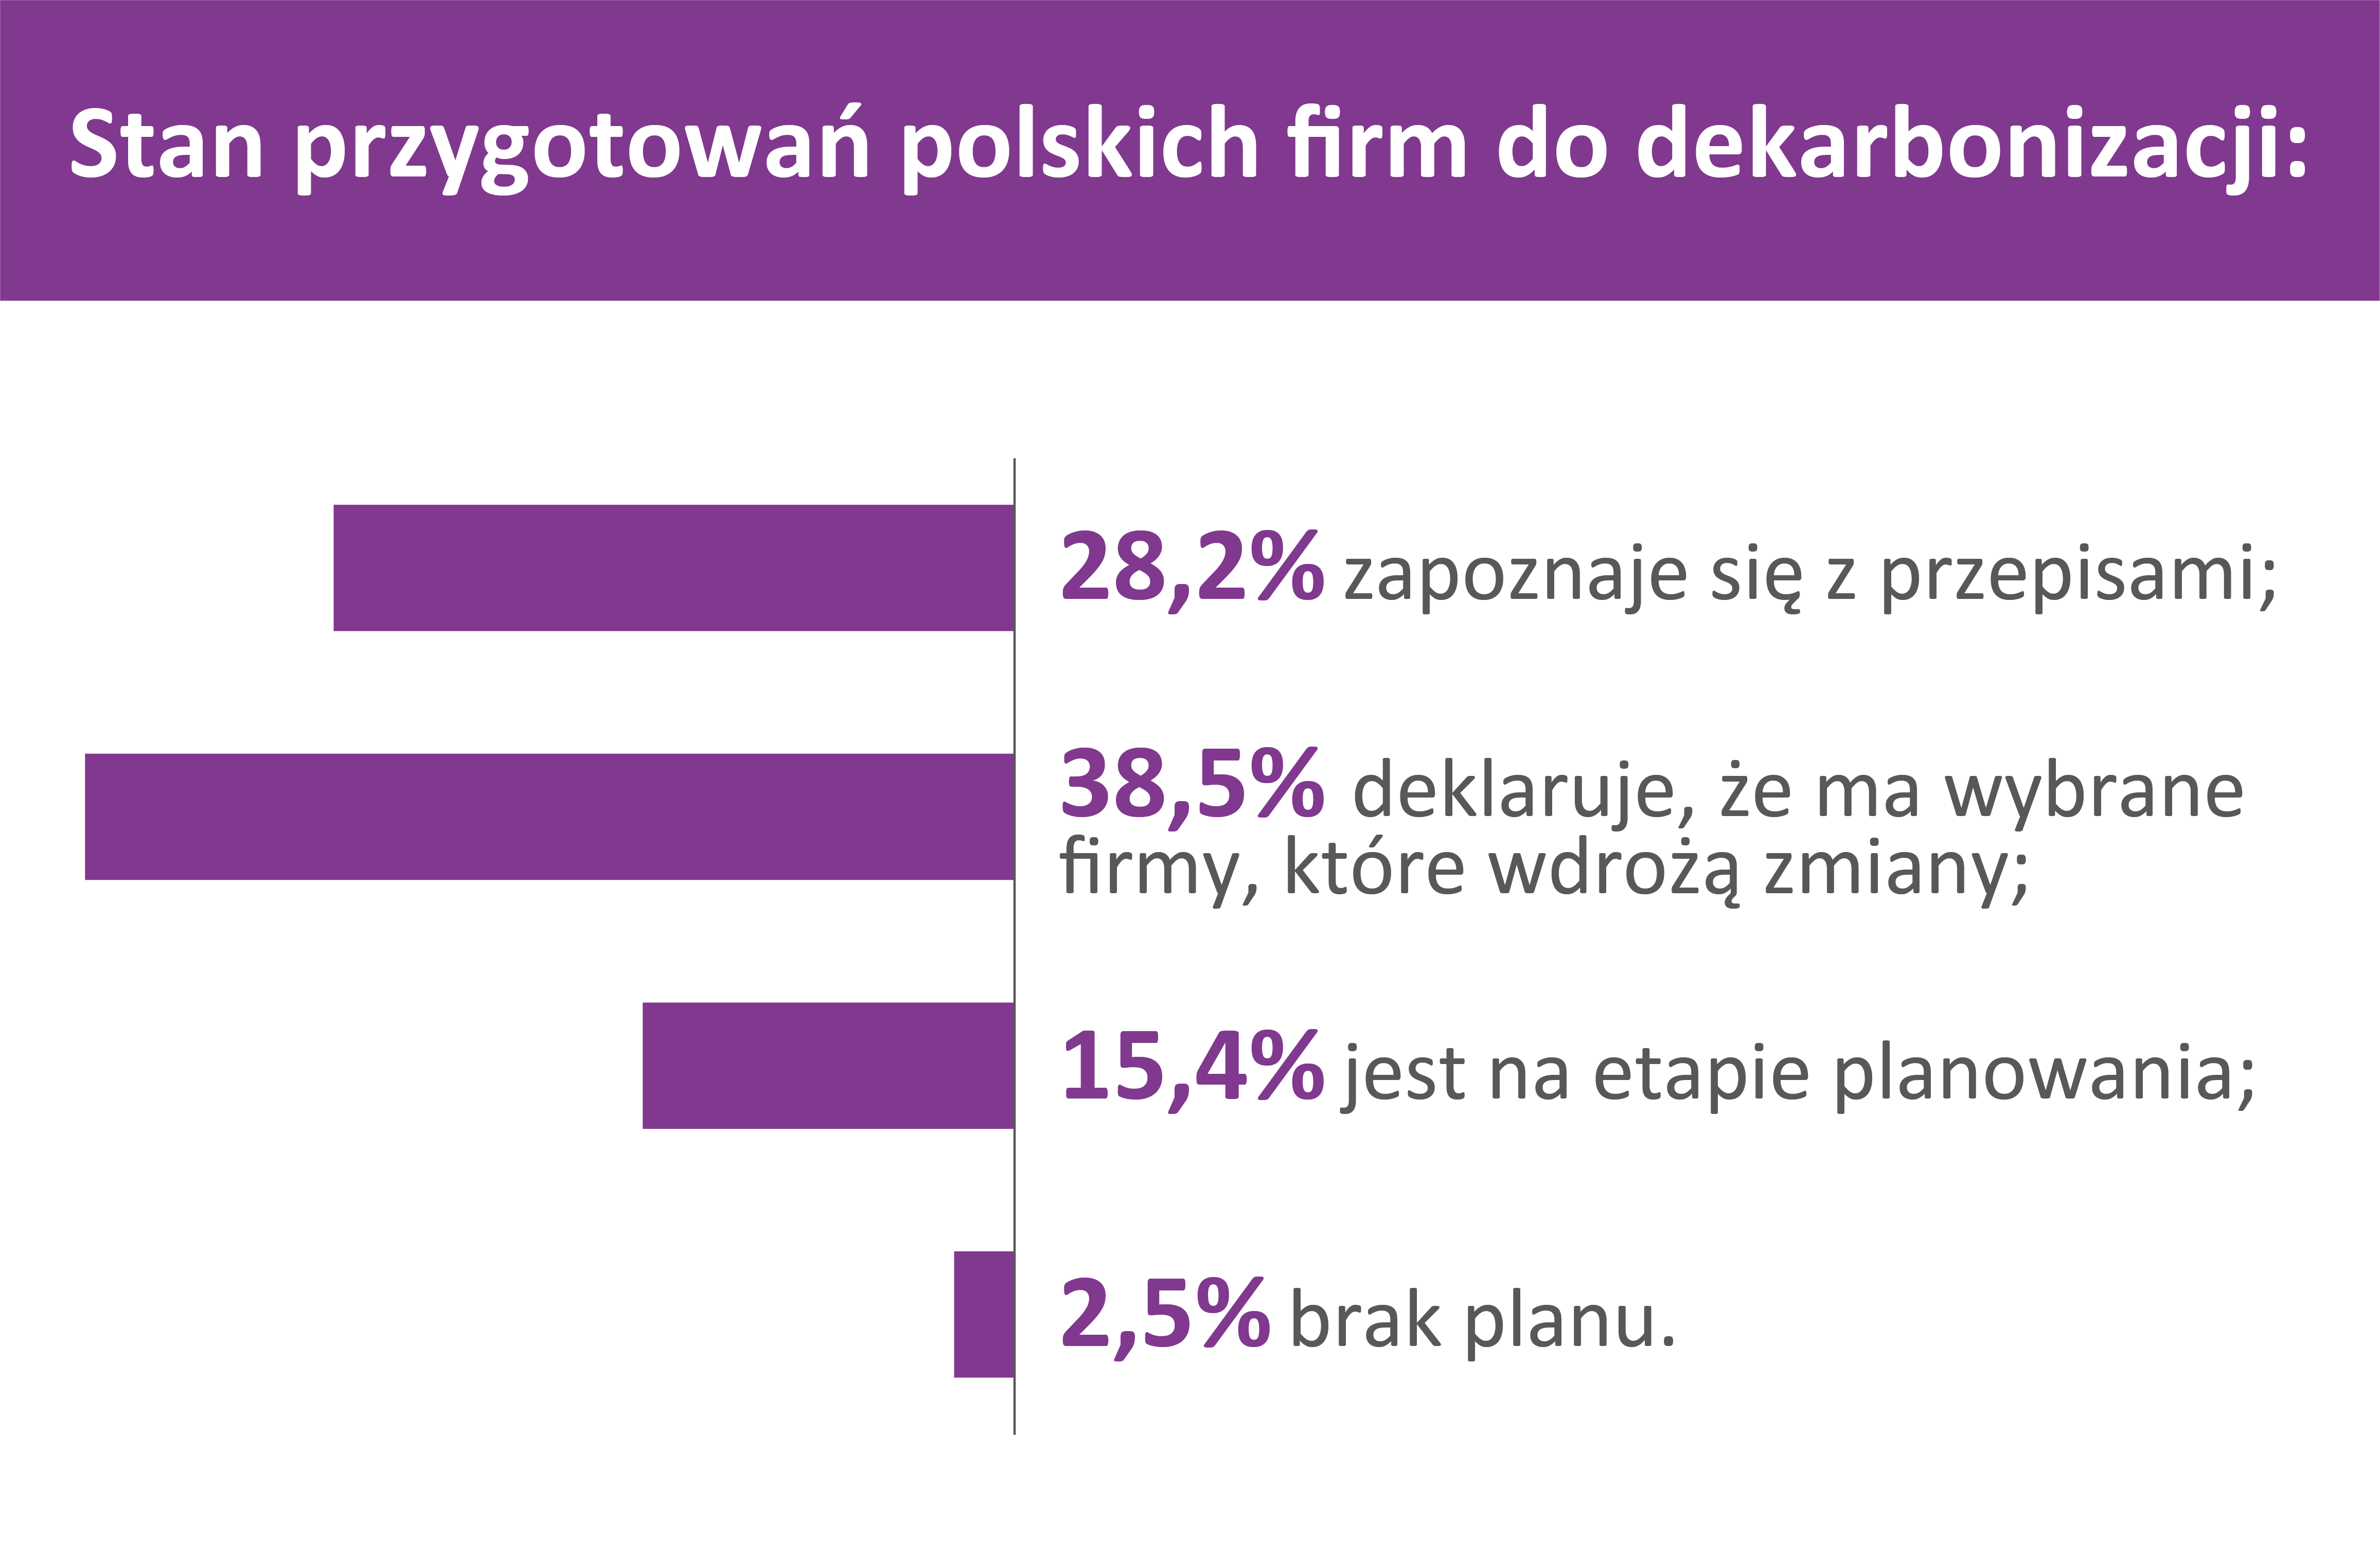 dyrektywa_mcp_polskie_firmy_infografika_czesc3_duon